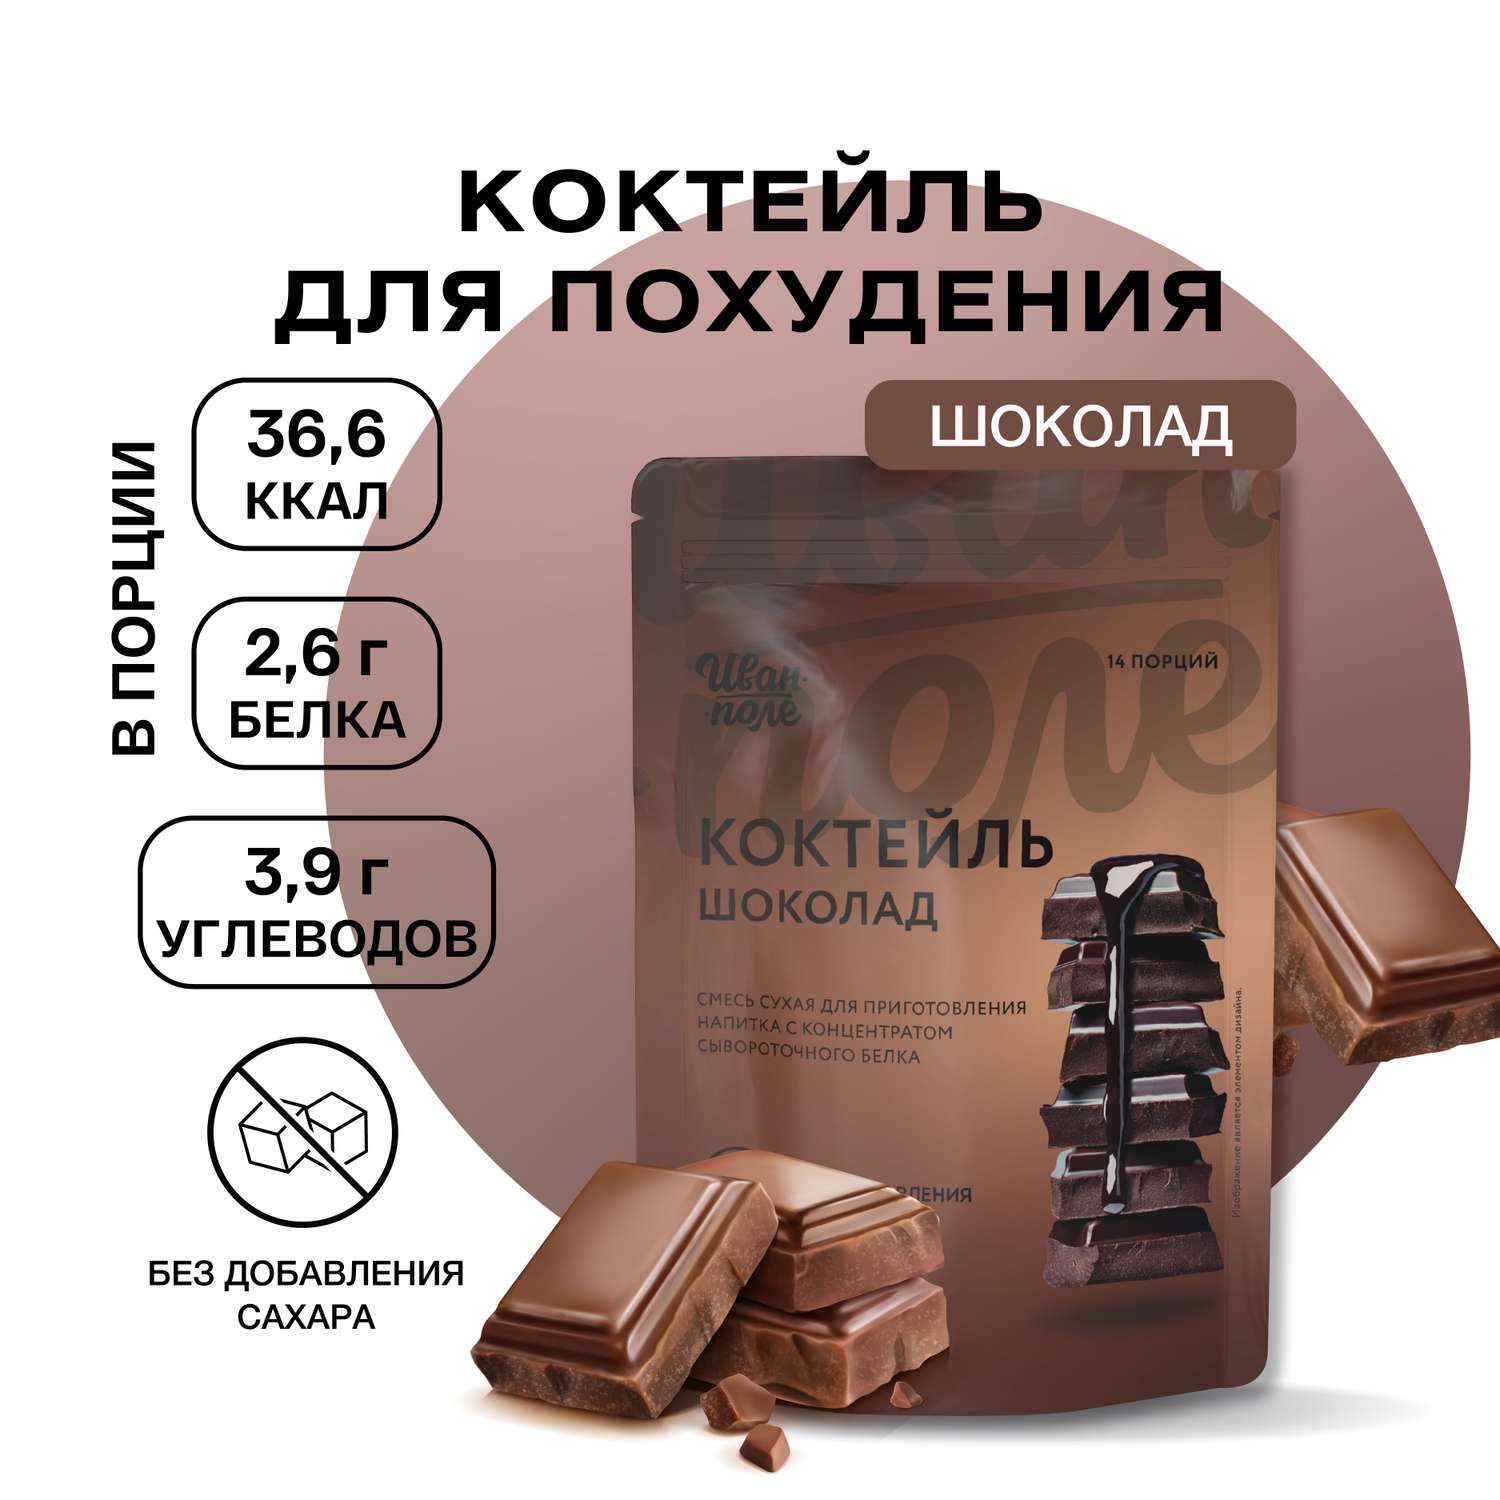 Протеиновый молочный коктейль Иван-поле Шоколад без сахара для похудения 210 г - фото 1